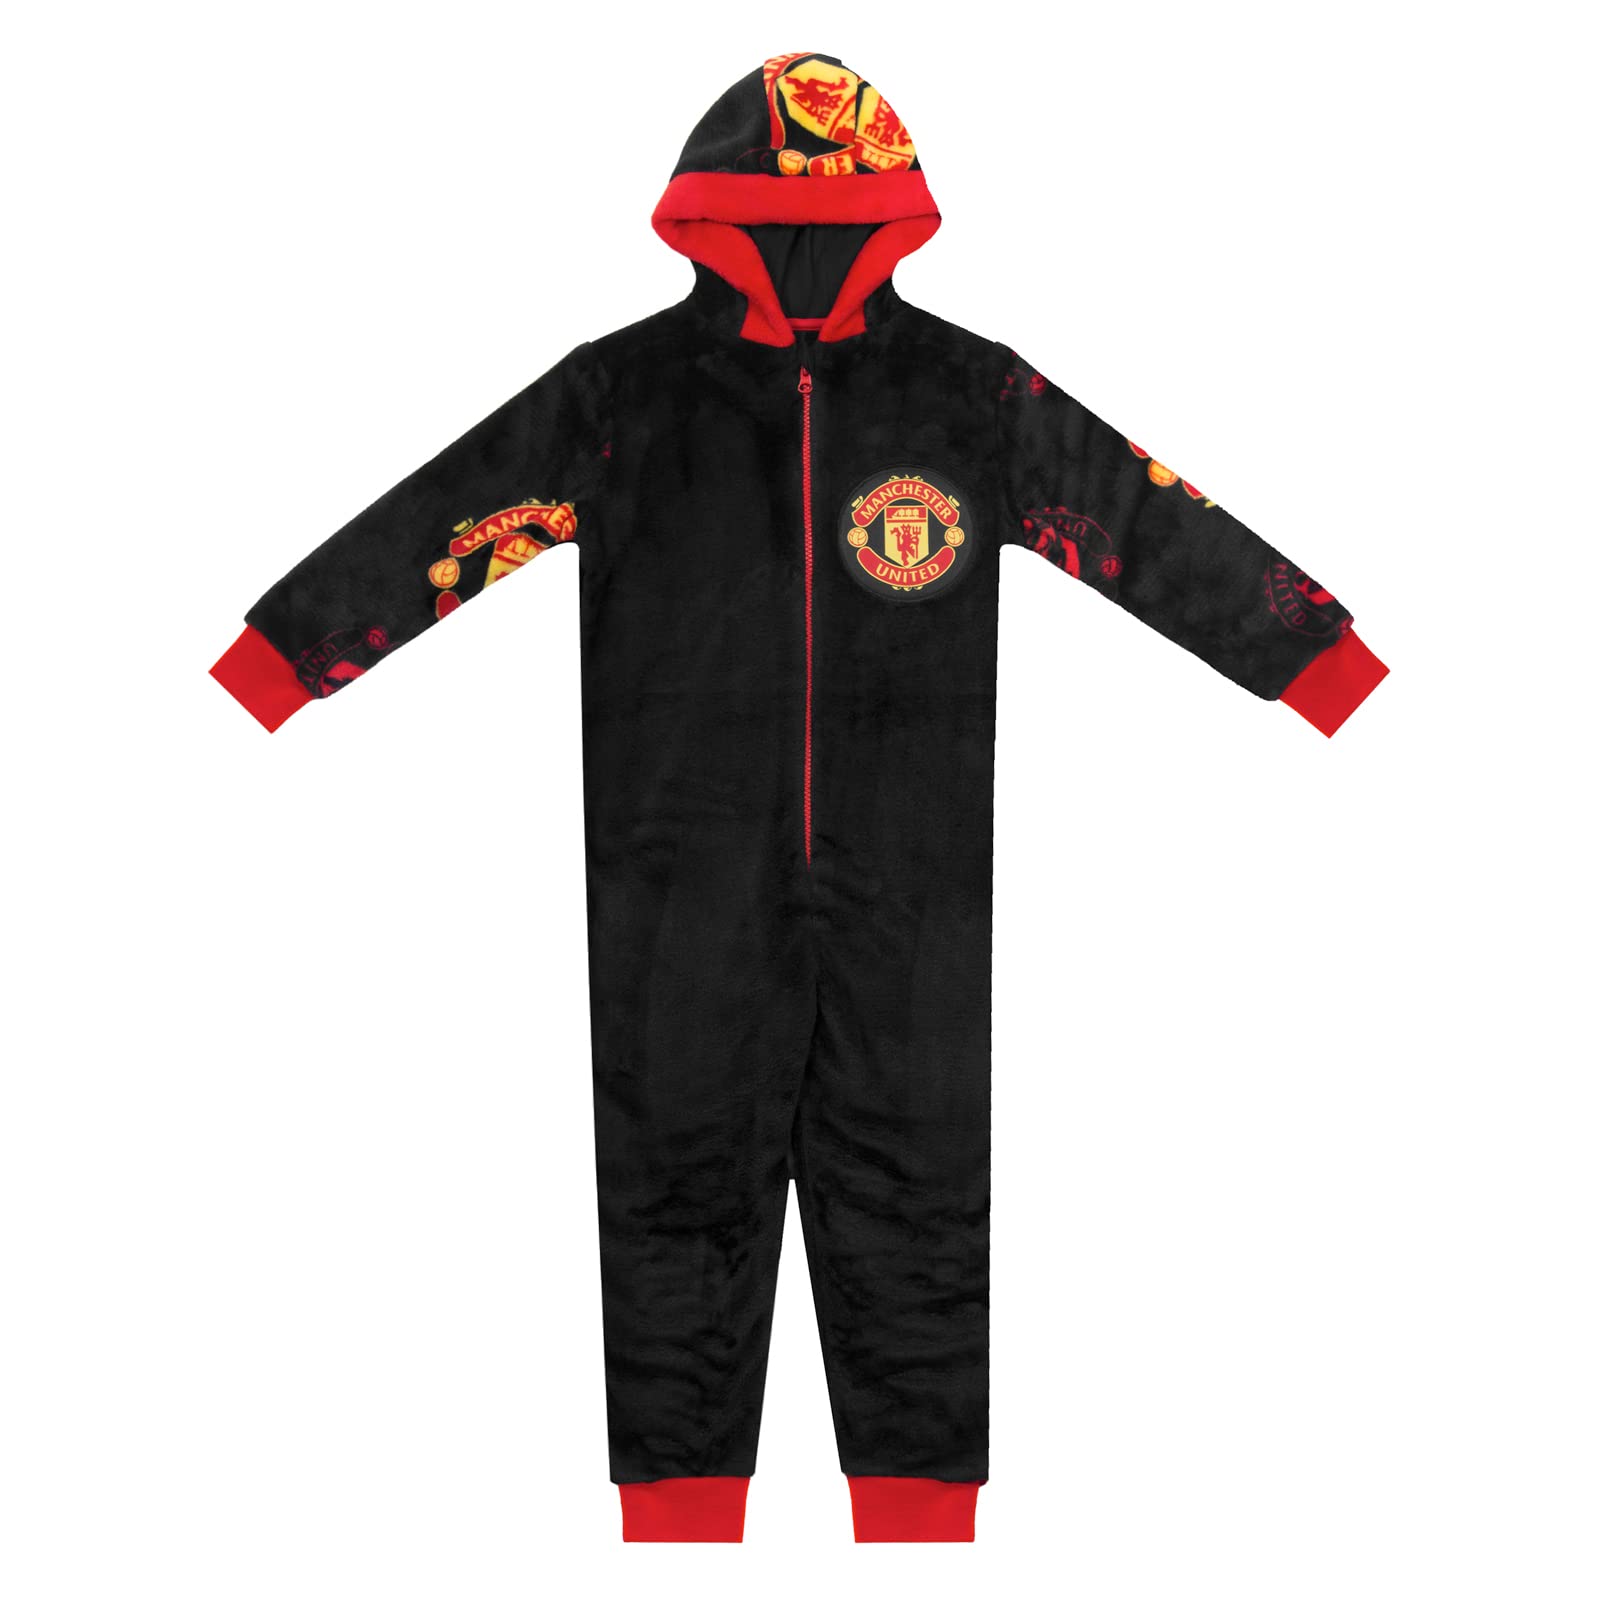 Manchester United FC - Jungen Schlafanzug-Einteiler aus Fleece - Offizielles Merchandise - Geschenk für Fußballfans - 4-5 Jahre